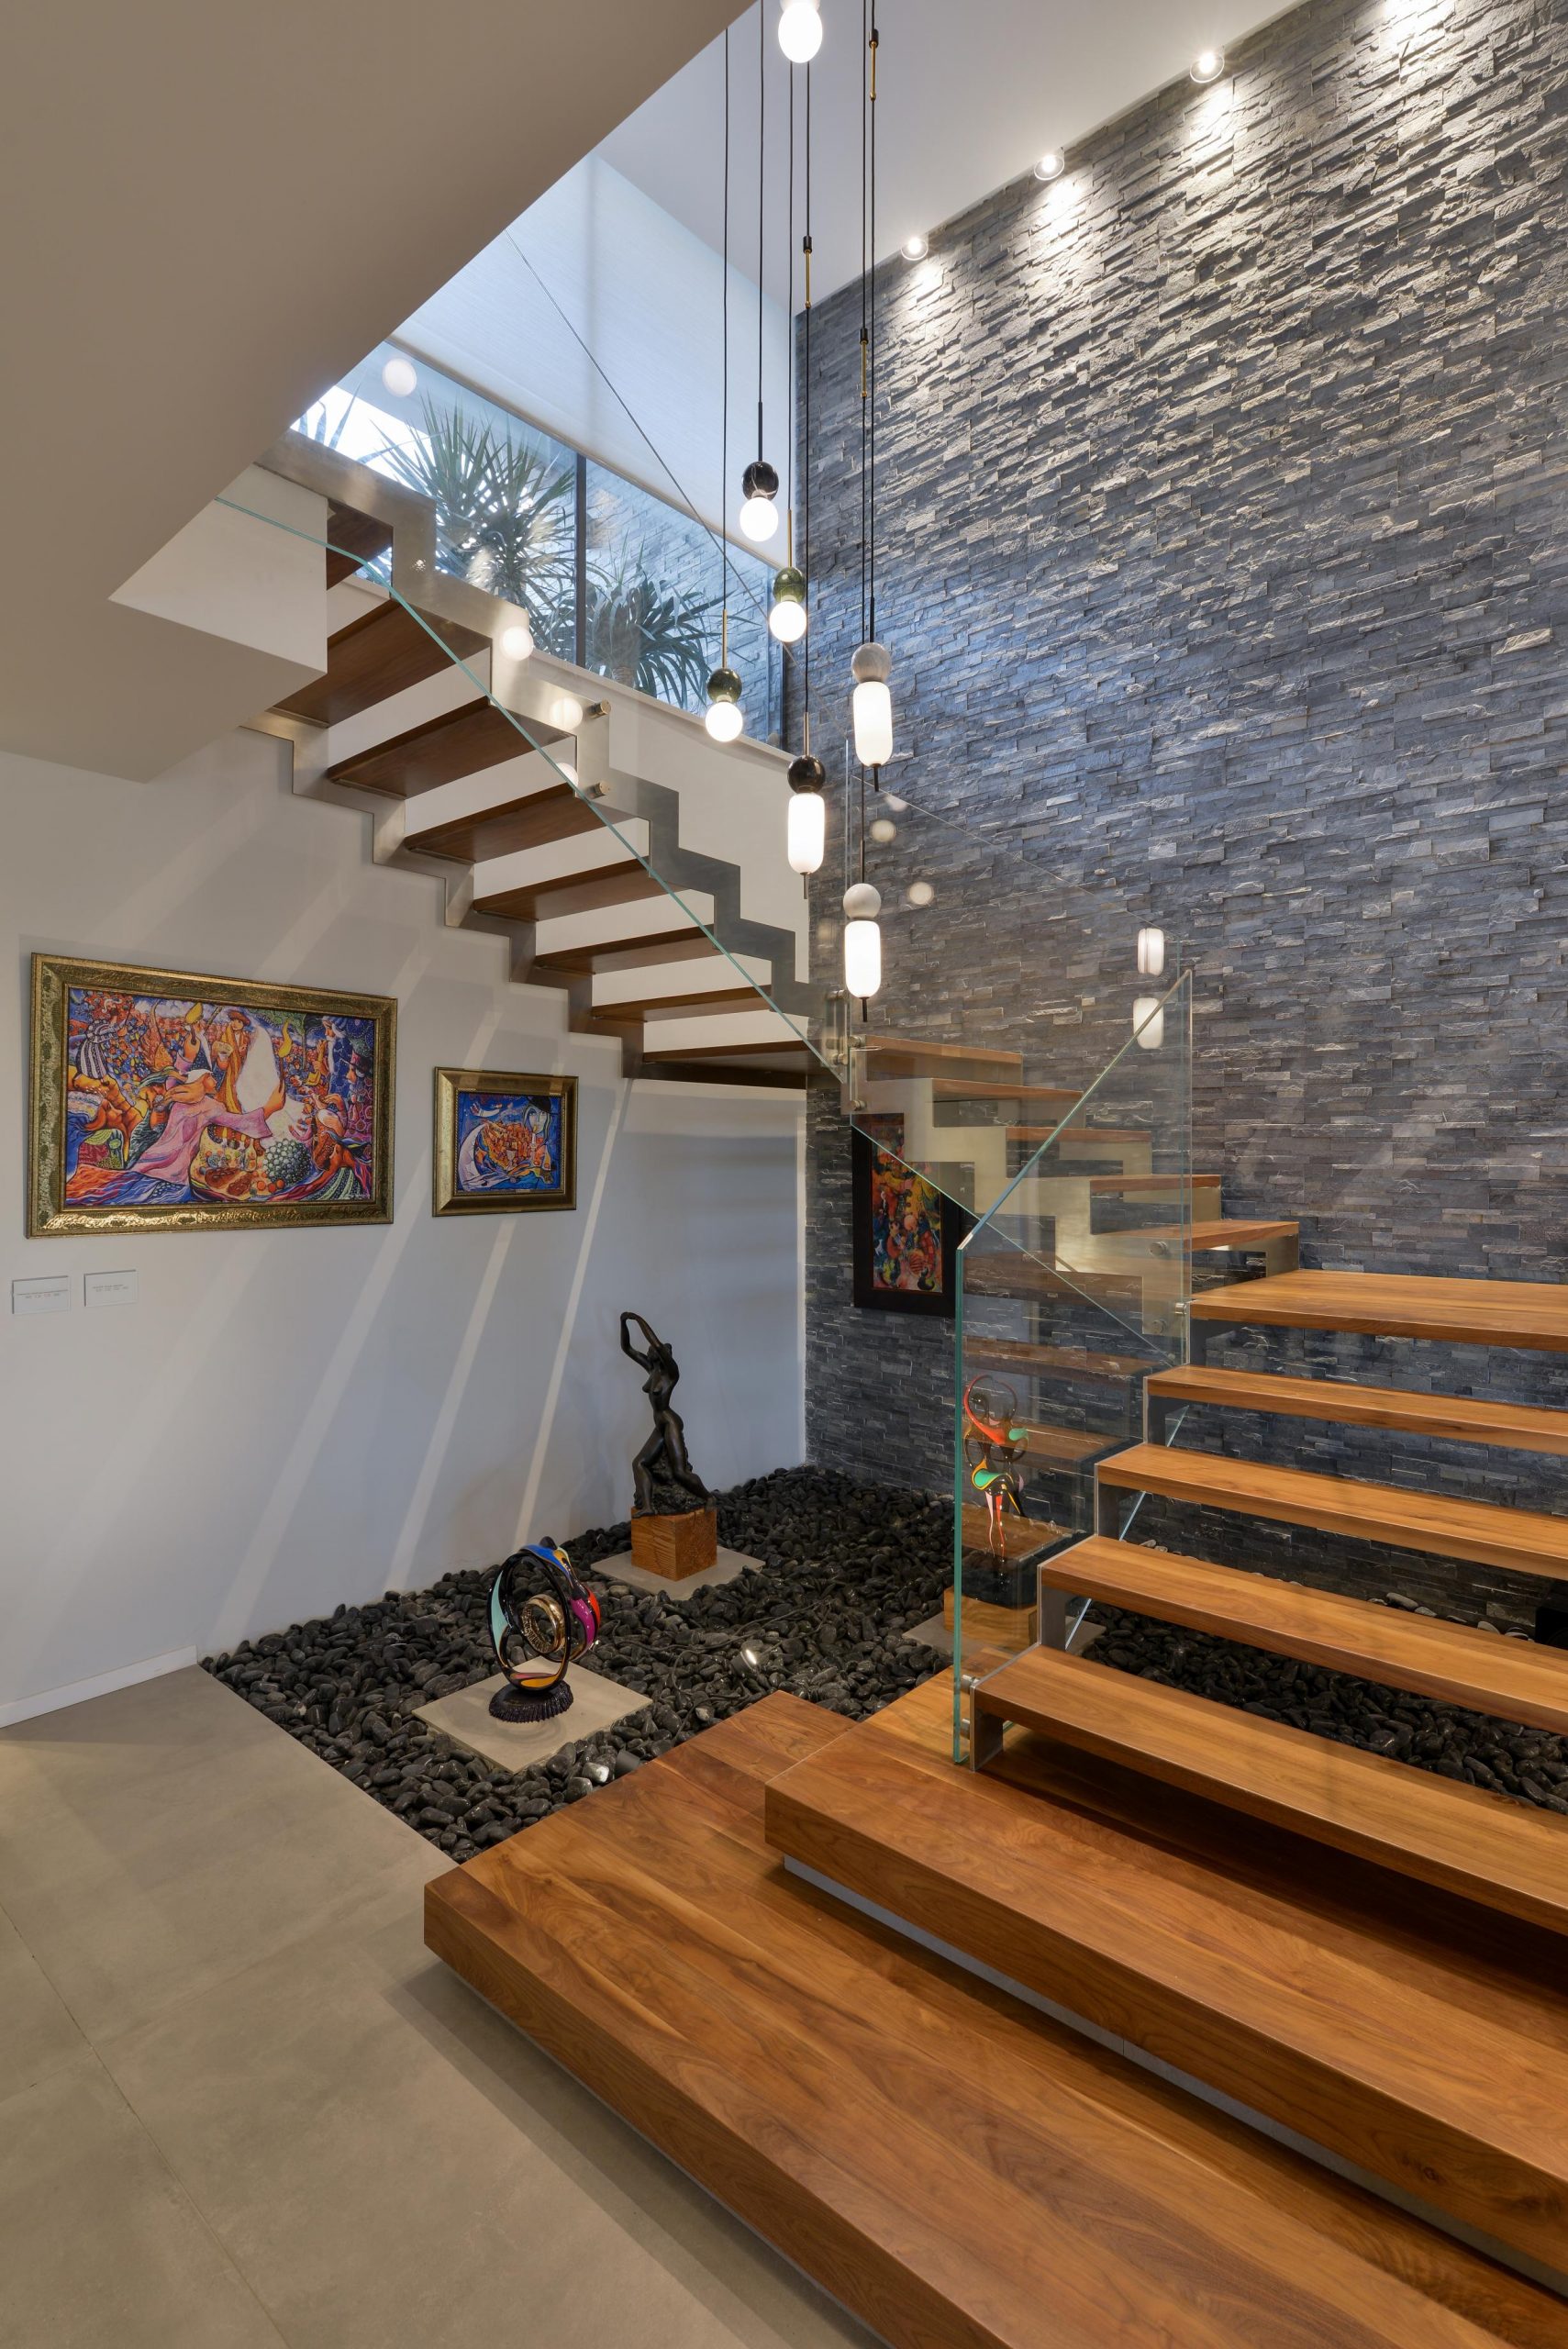 מדרגות עץ אגוז אמריקאי עולות לקומה השניה על קונסטרוקציות מנירוסטה ולצידן מעקה זכוכית אקסטרה קליר בוילה ברמלה